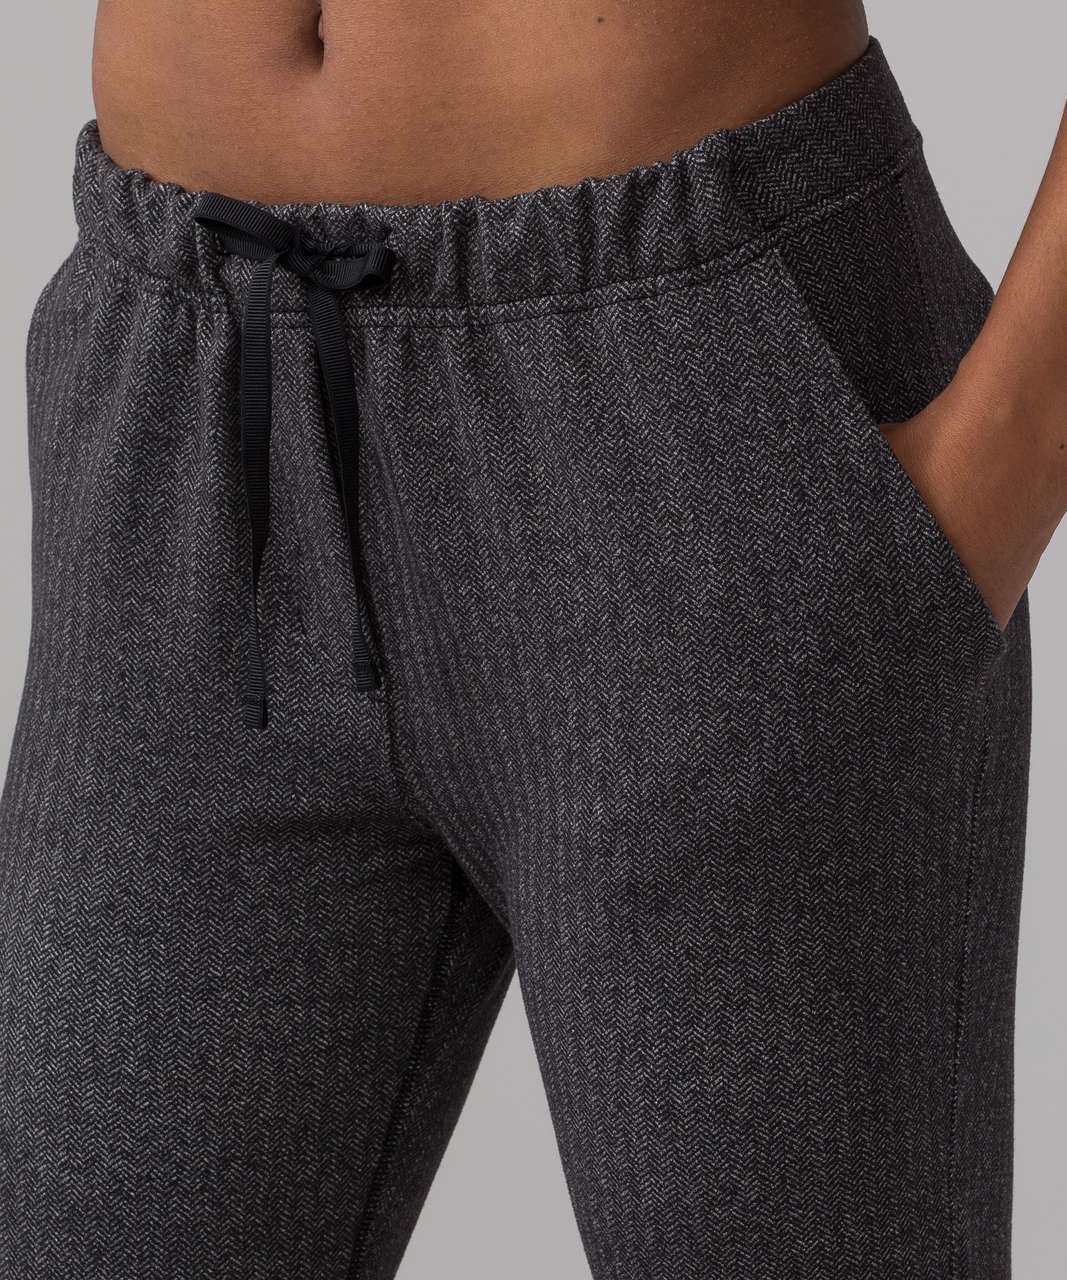 Cotton Stretch Leggings Pants For Men